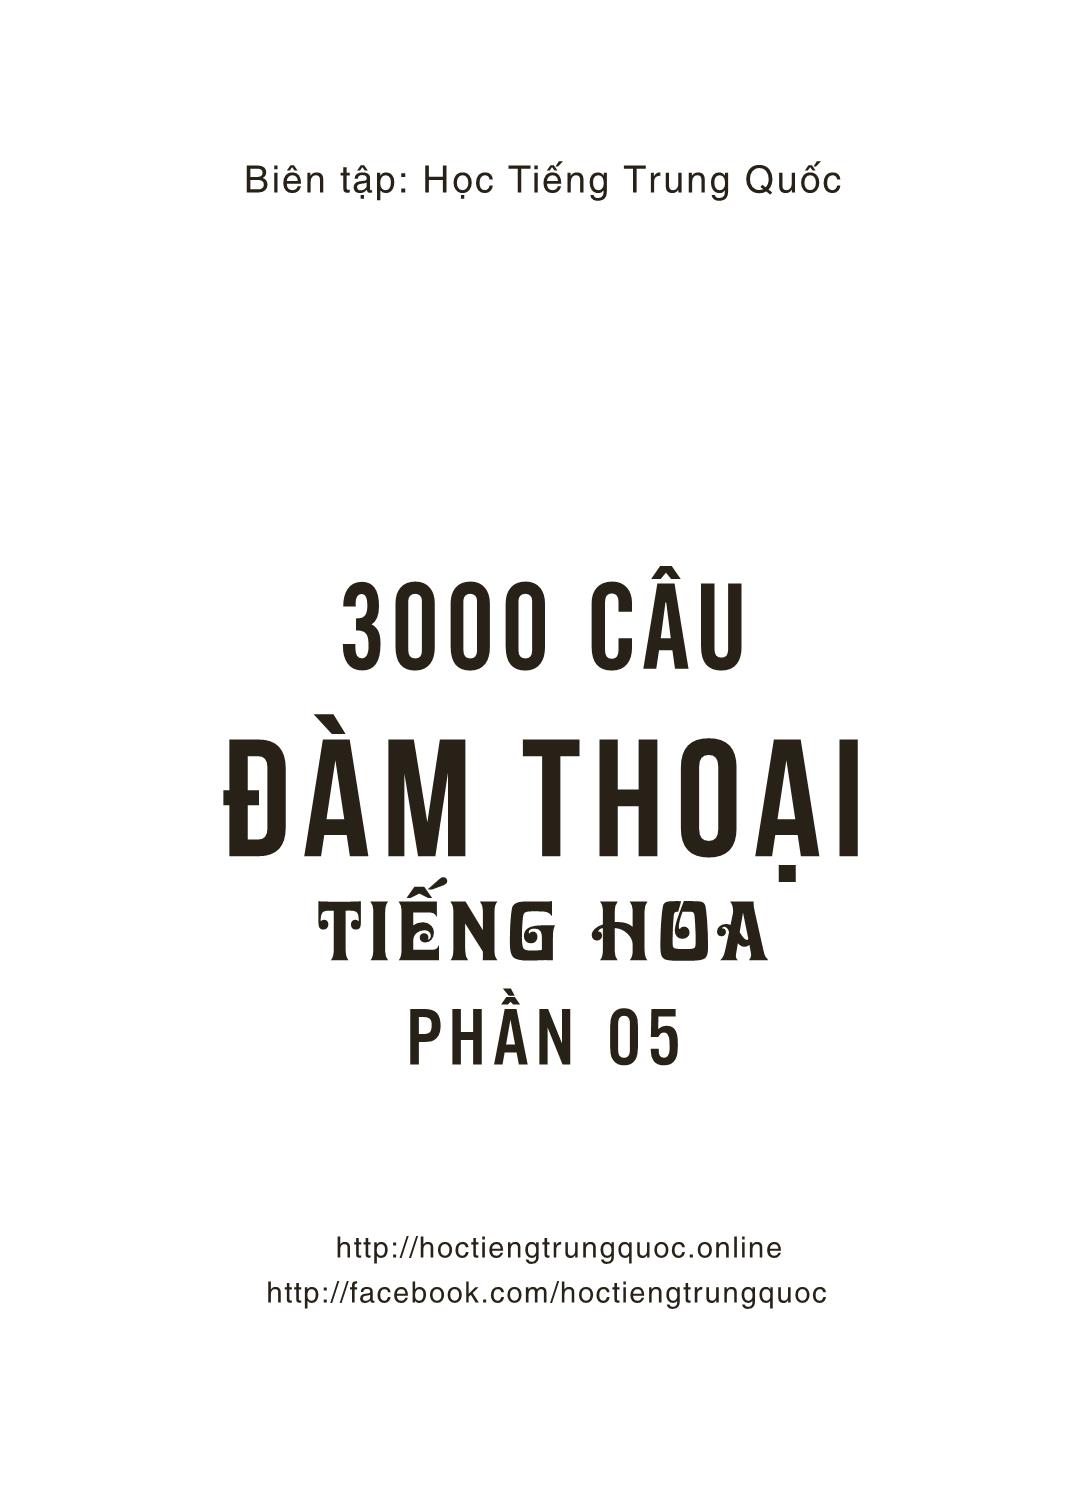 3000 Câu đàm thoại tiếng Hoa - Phần 5 trang 2